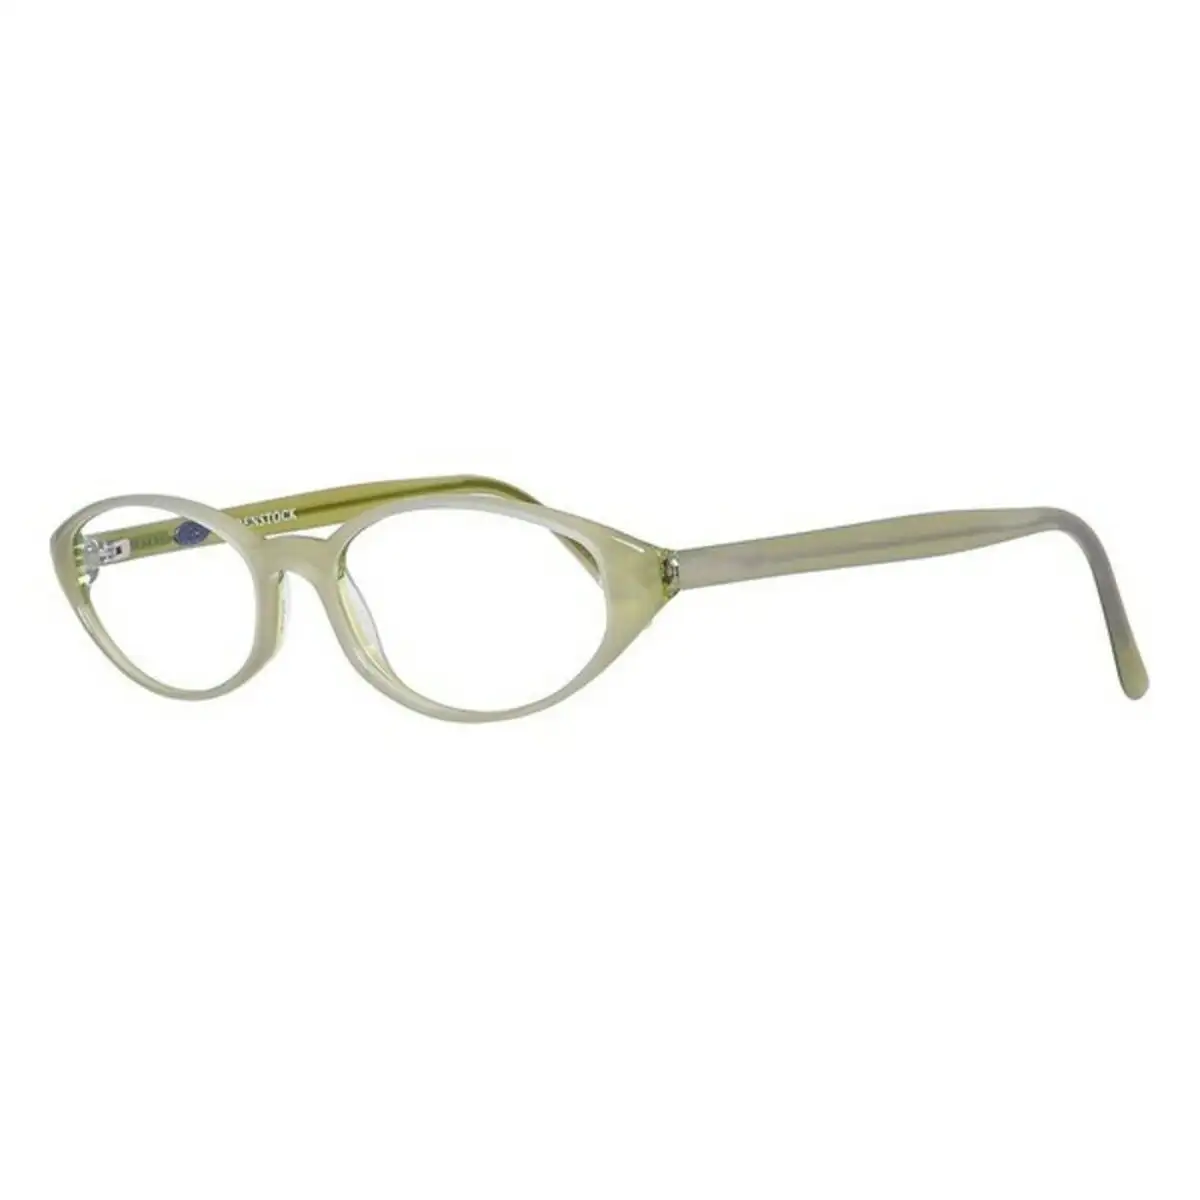 Monture de lunettes femme rodenstock r5112 e vert o 48 mm _6680. DIAYTAR SENEGAL - Là où Chaque Achat a du Sens. Explorez notre gamme et choisissez des produits qui racontent une histoire, du traditionnel au contemporain.